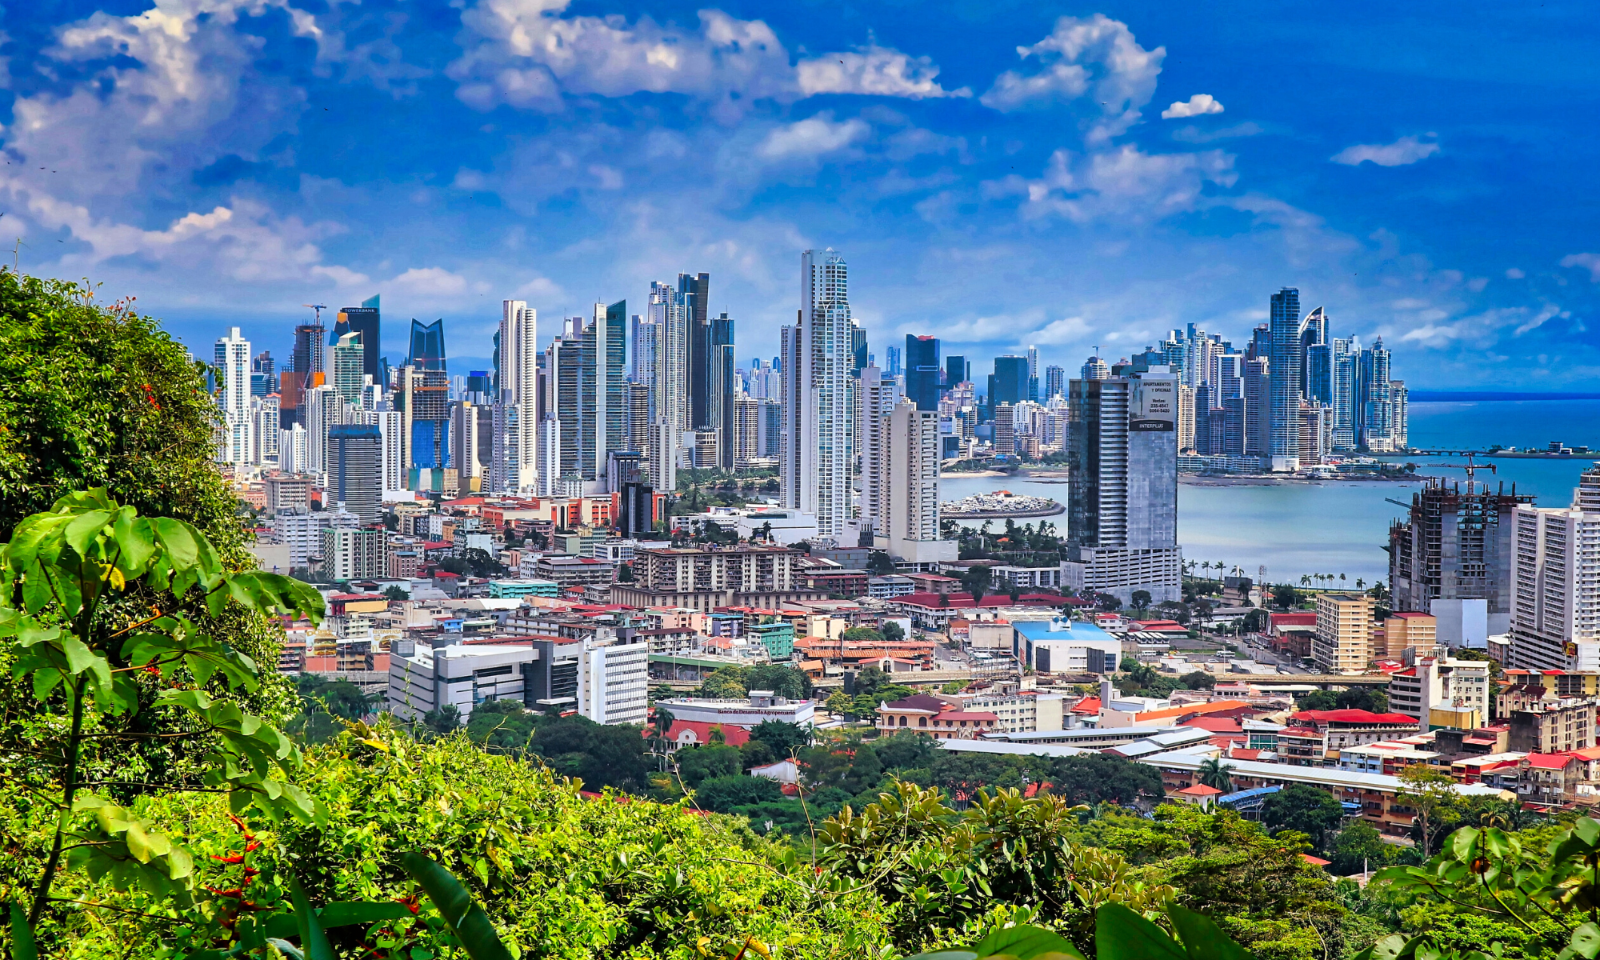 Skyline view of Panama City